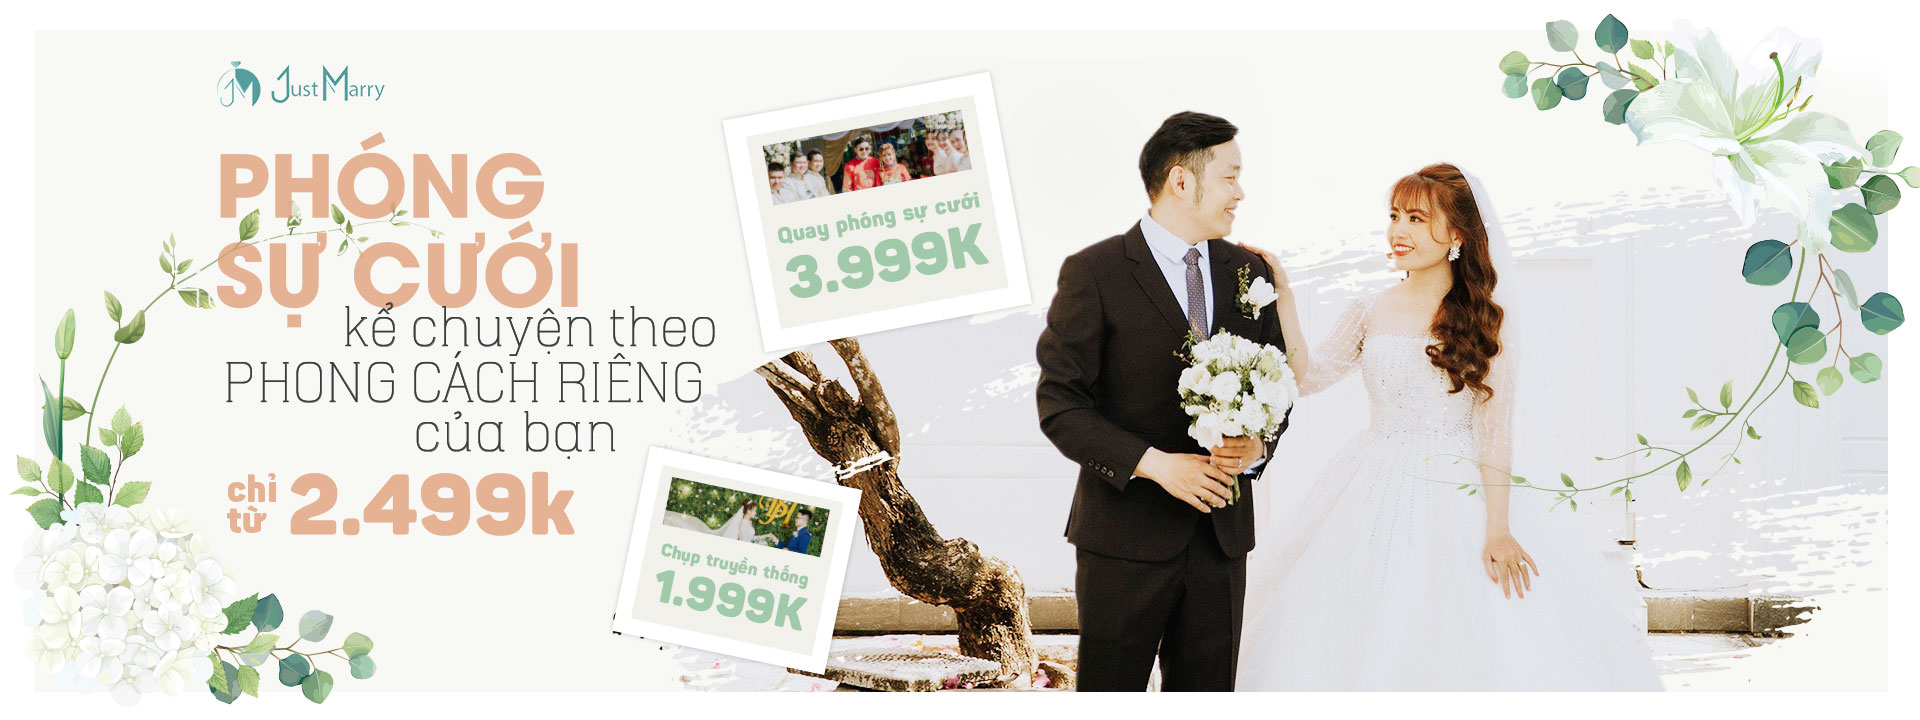 Phóng sự cưới kể chuyện theo PHONG CÁCH RIÊNG của bạn chỉ từ 2.499k